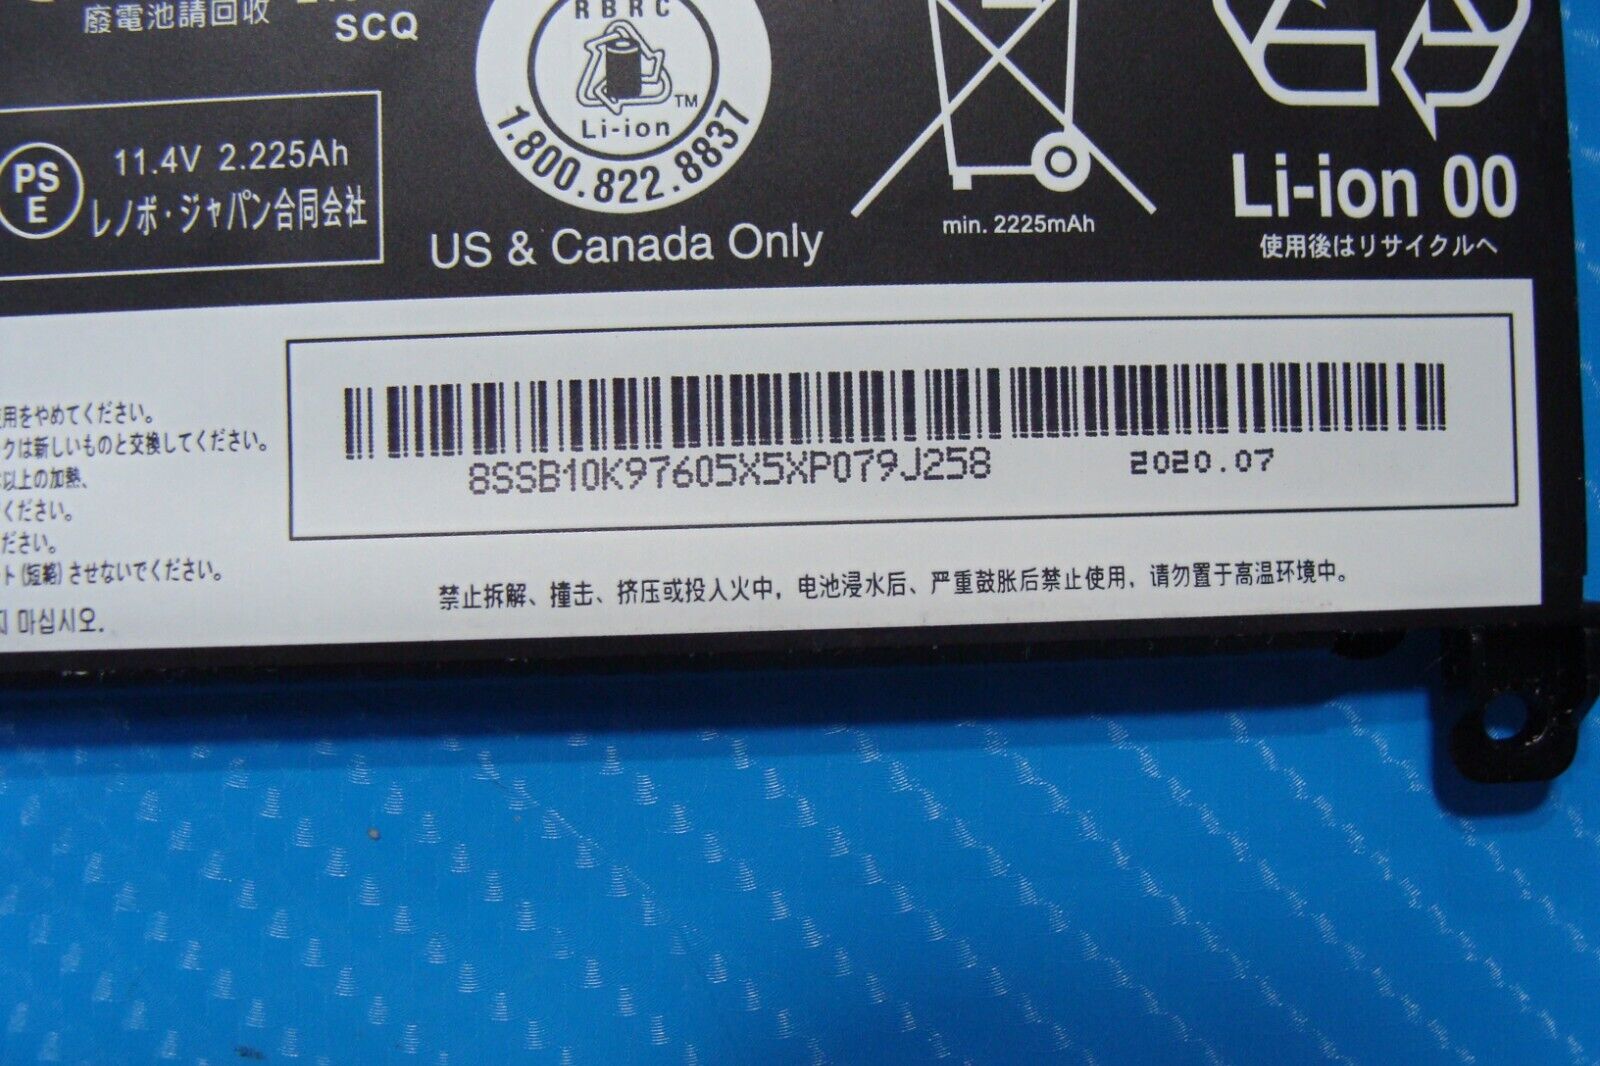 Lenovo ThinkPad 14” T470s OEM Battery 11.4V 26.1Wh 2229mAh 01AV462 SB10K97605